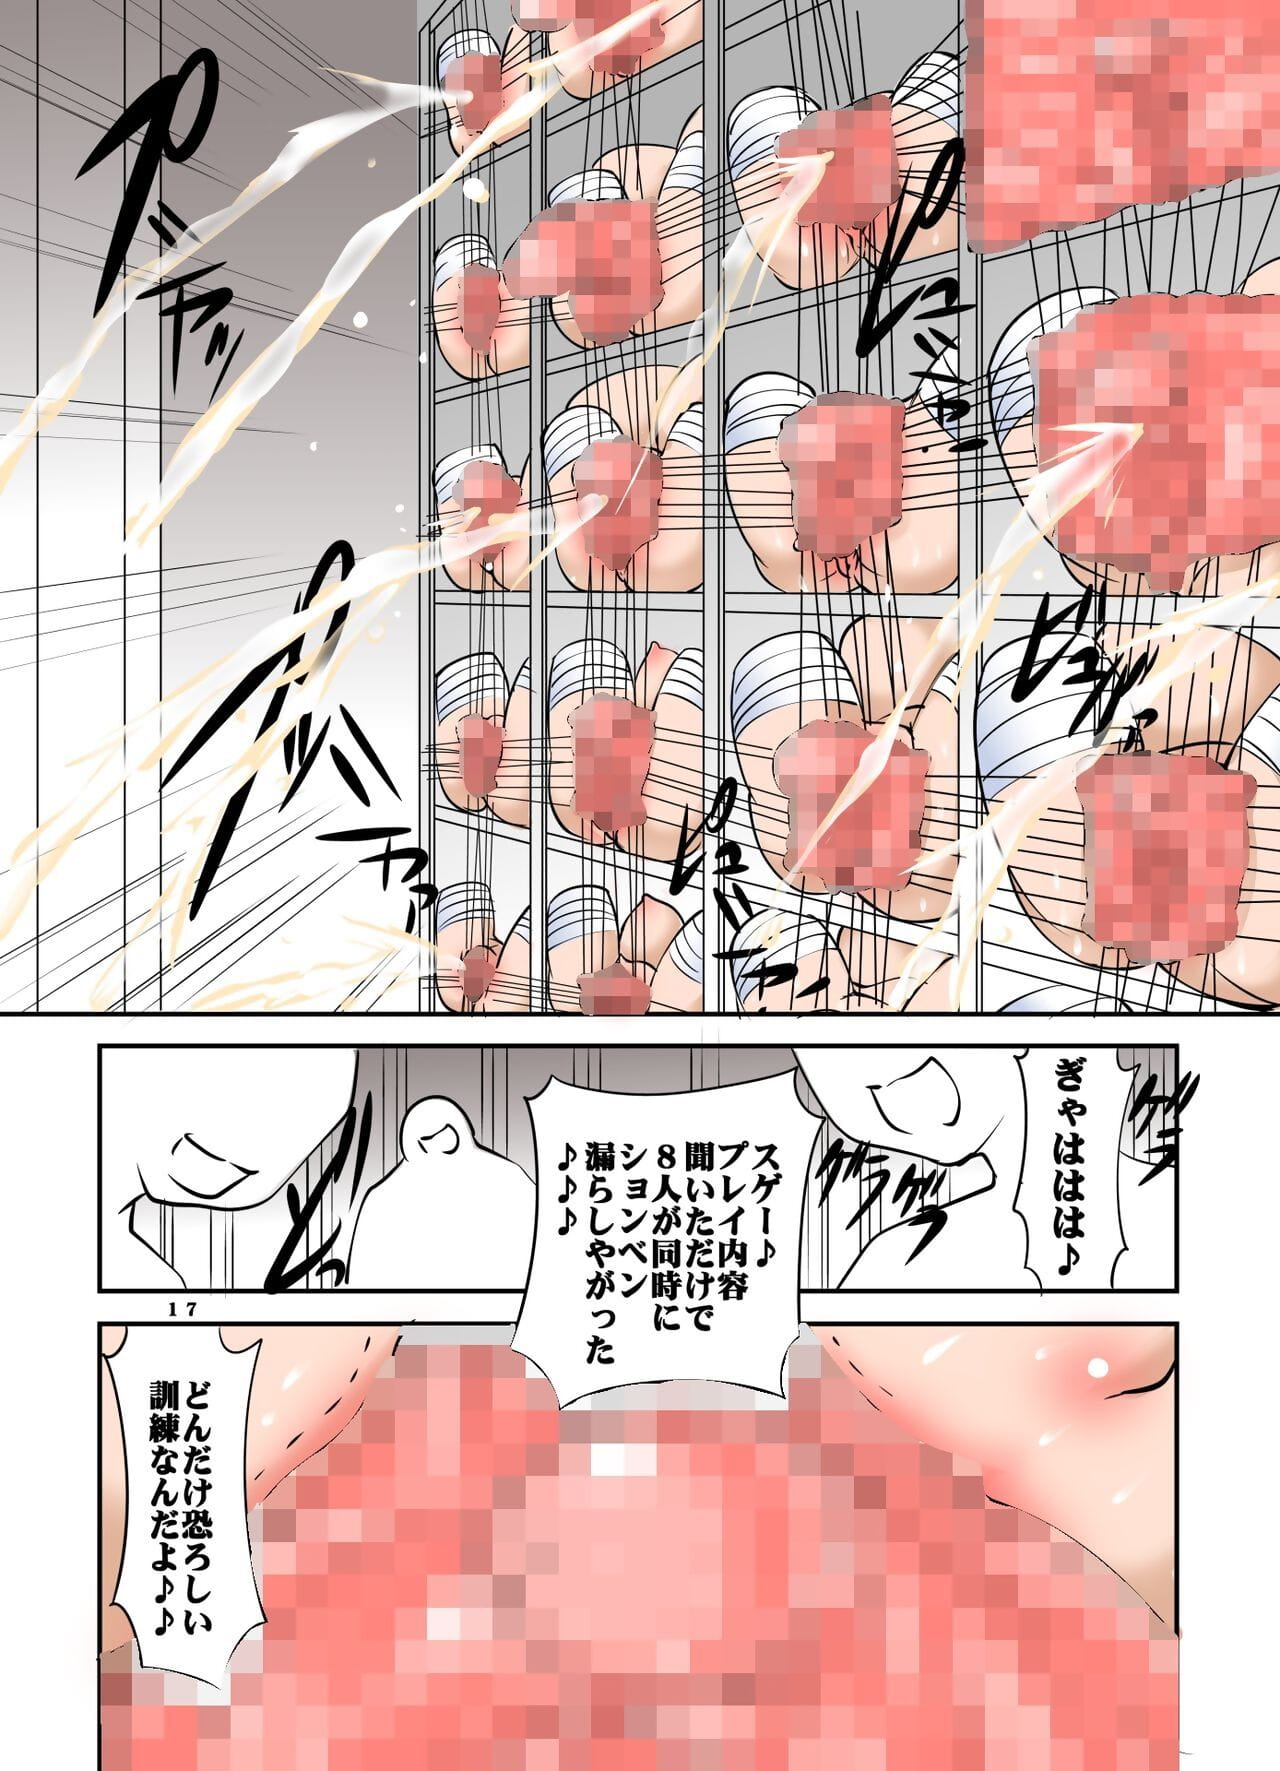 shishi setsudan Shoujo goumon gyakutai kan no Mucama San Vol 3 page 1